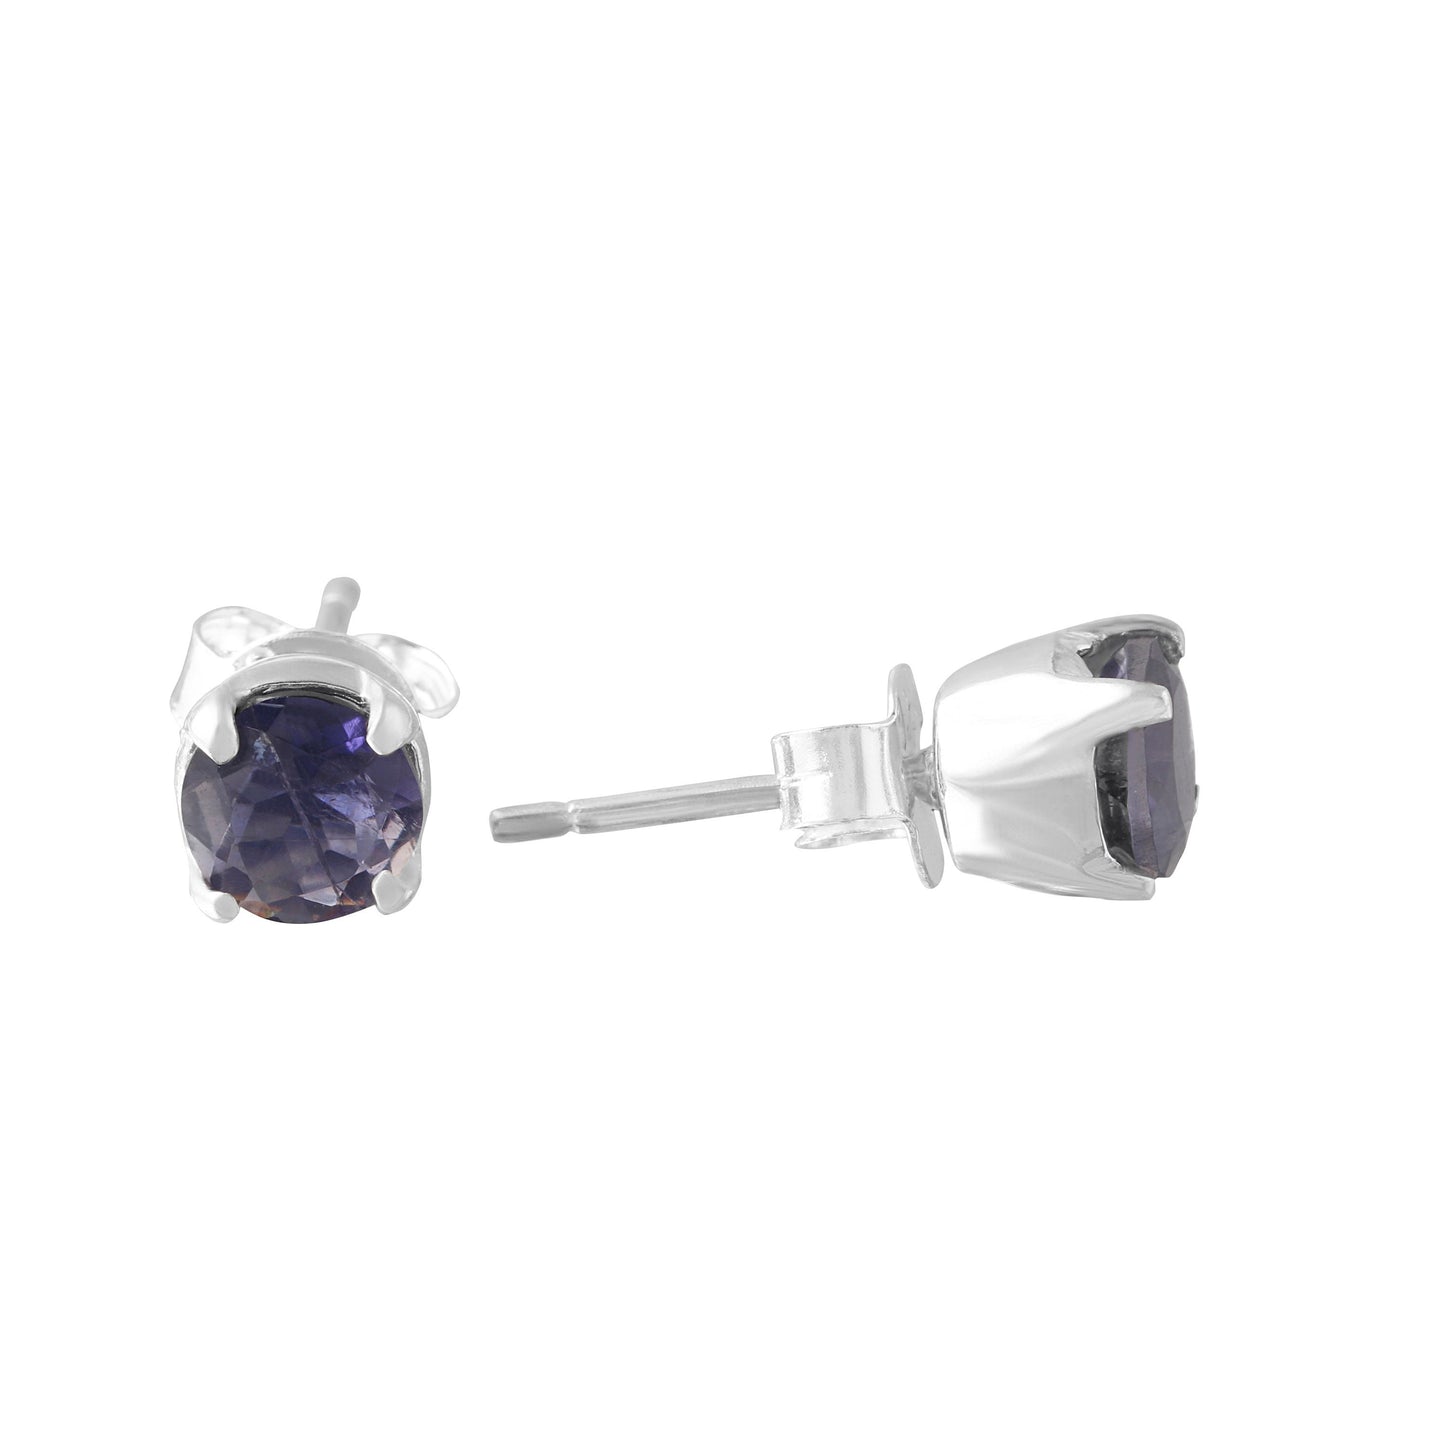 Genuine Iolite Round Gemstones 925 Sterling SILVER Prong Stud Earrings, Libra, Sagittarius Taurus Zodiac, September Birthstone, Australia, Zorbajewellers